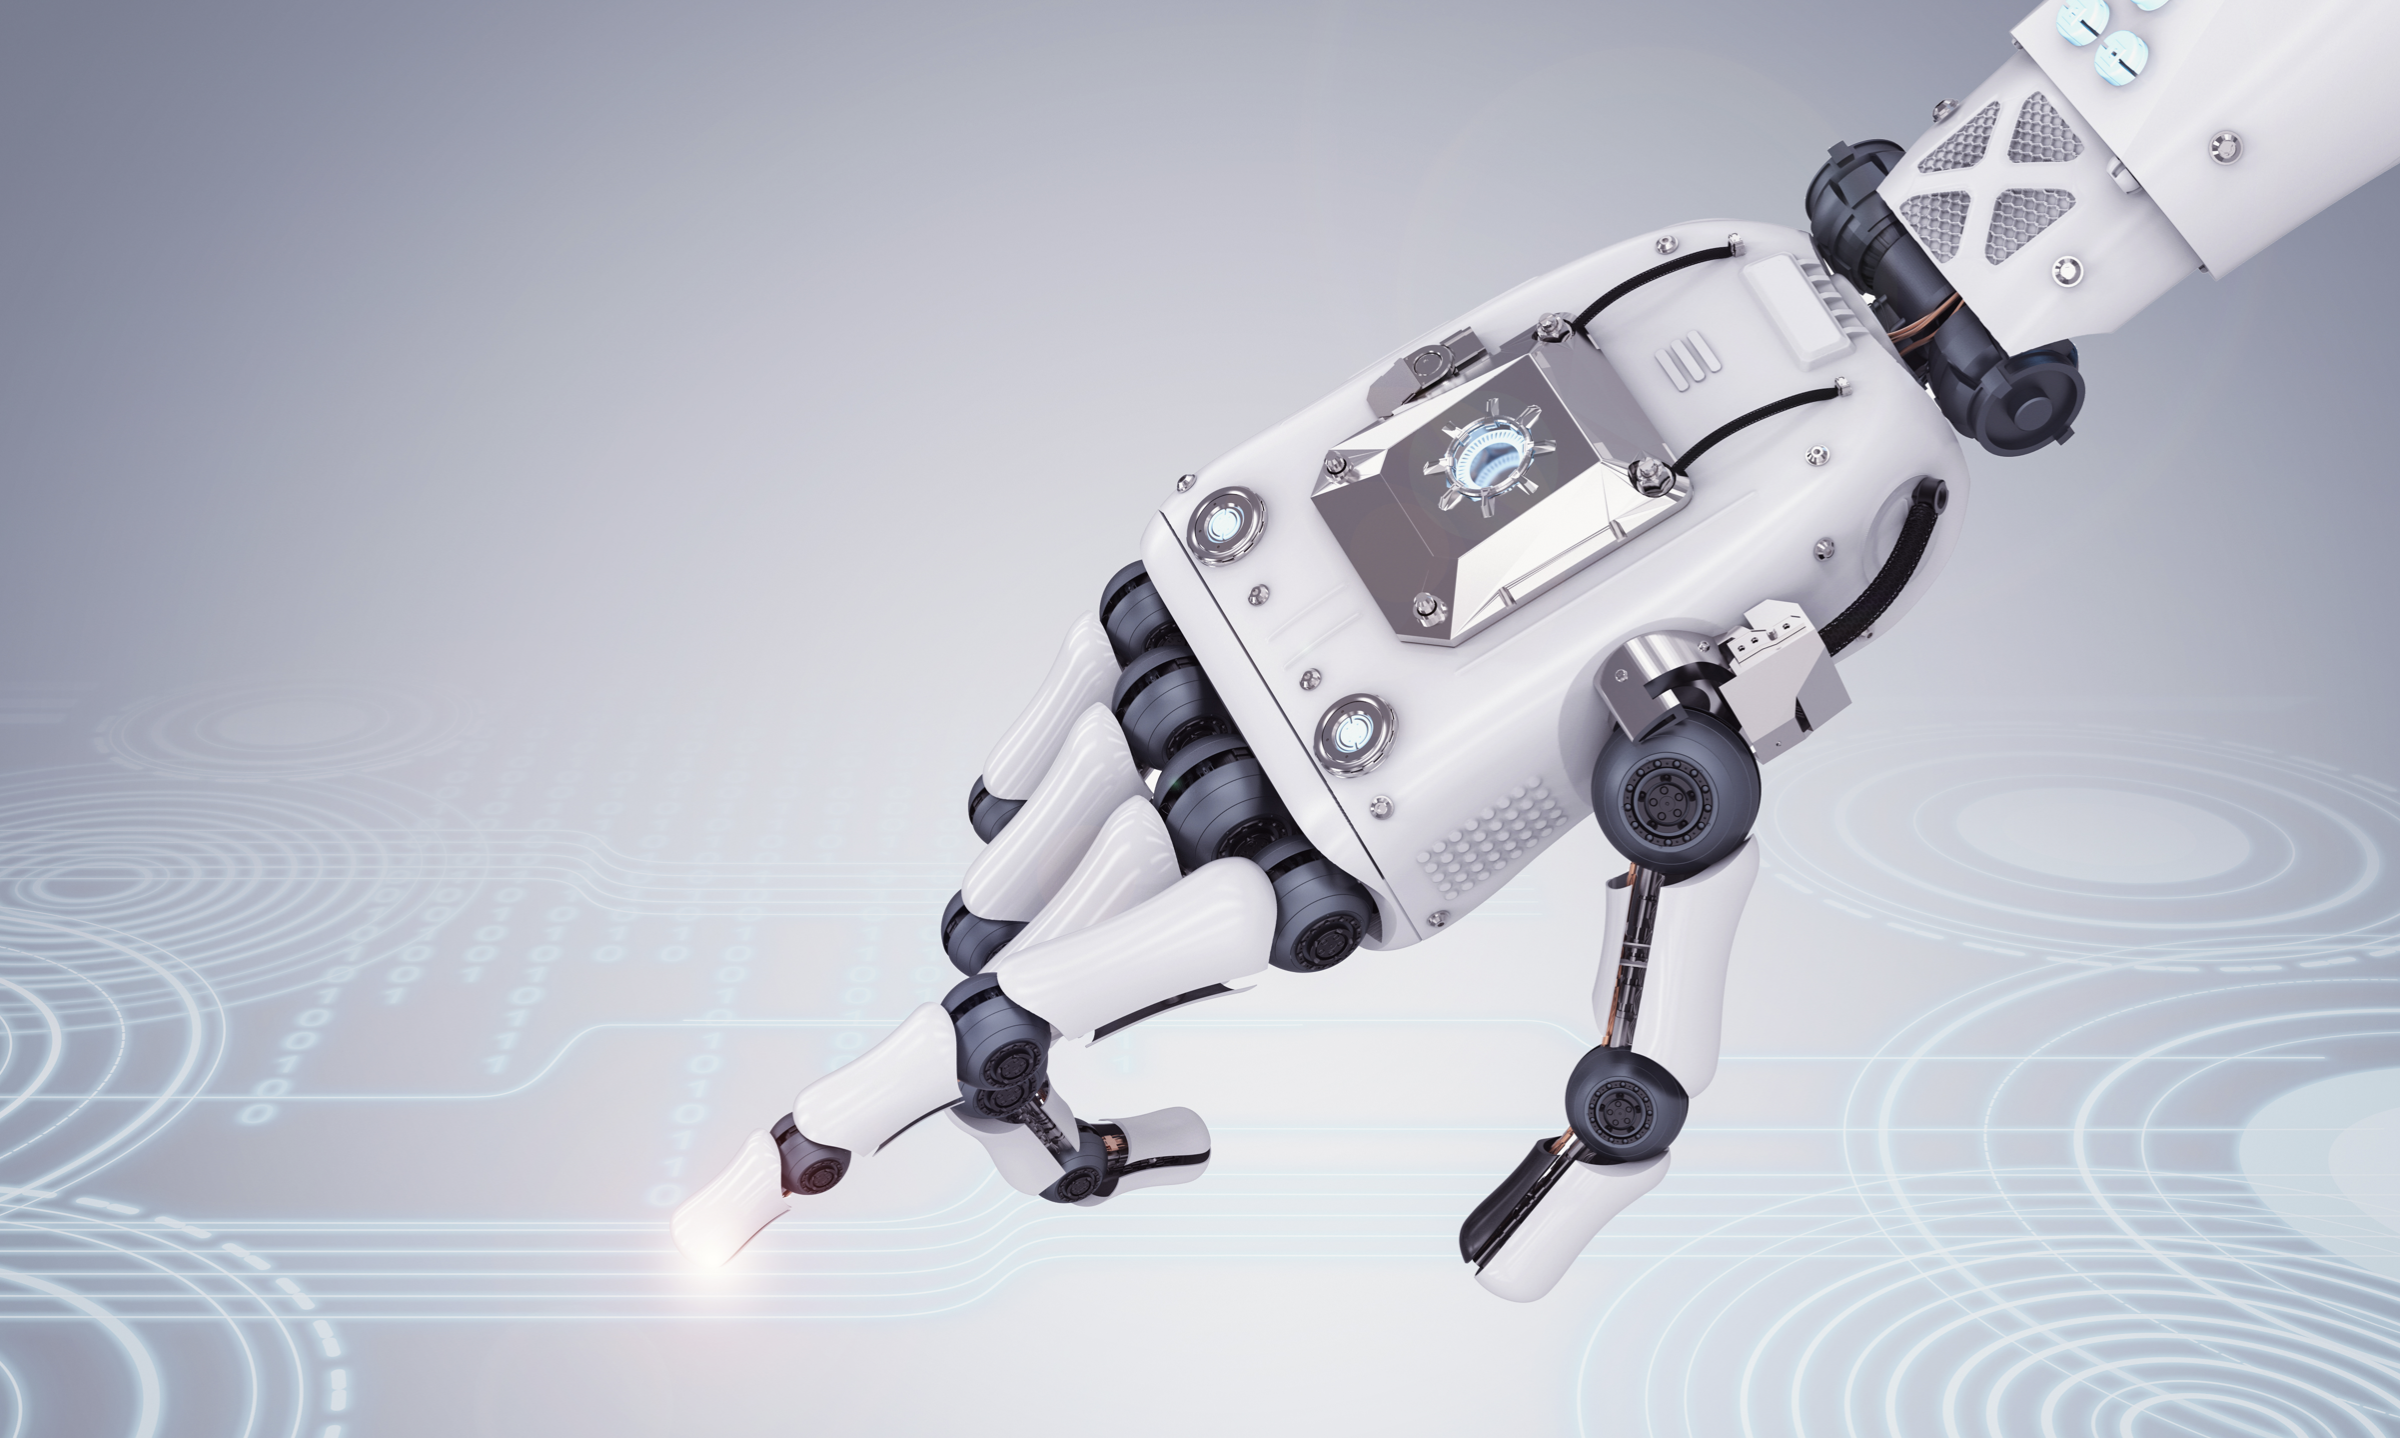 星猿哲科技完成a轮融资,利用机器人技术赋能物流和工业自动化